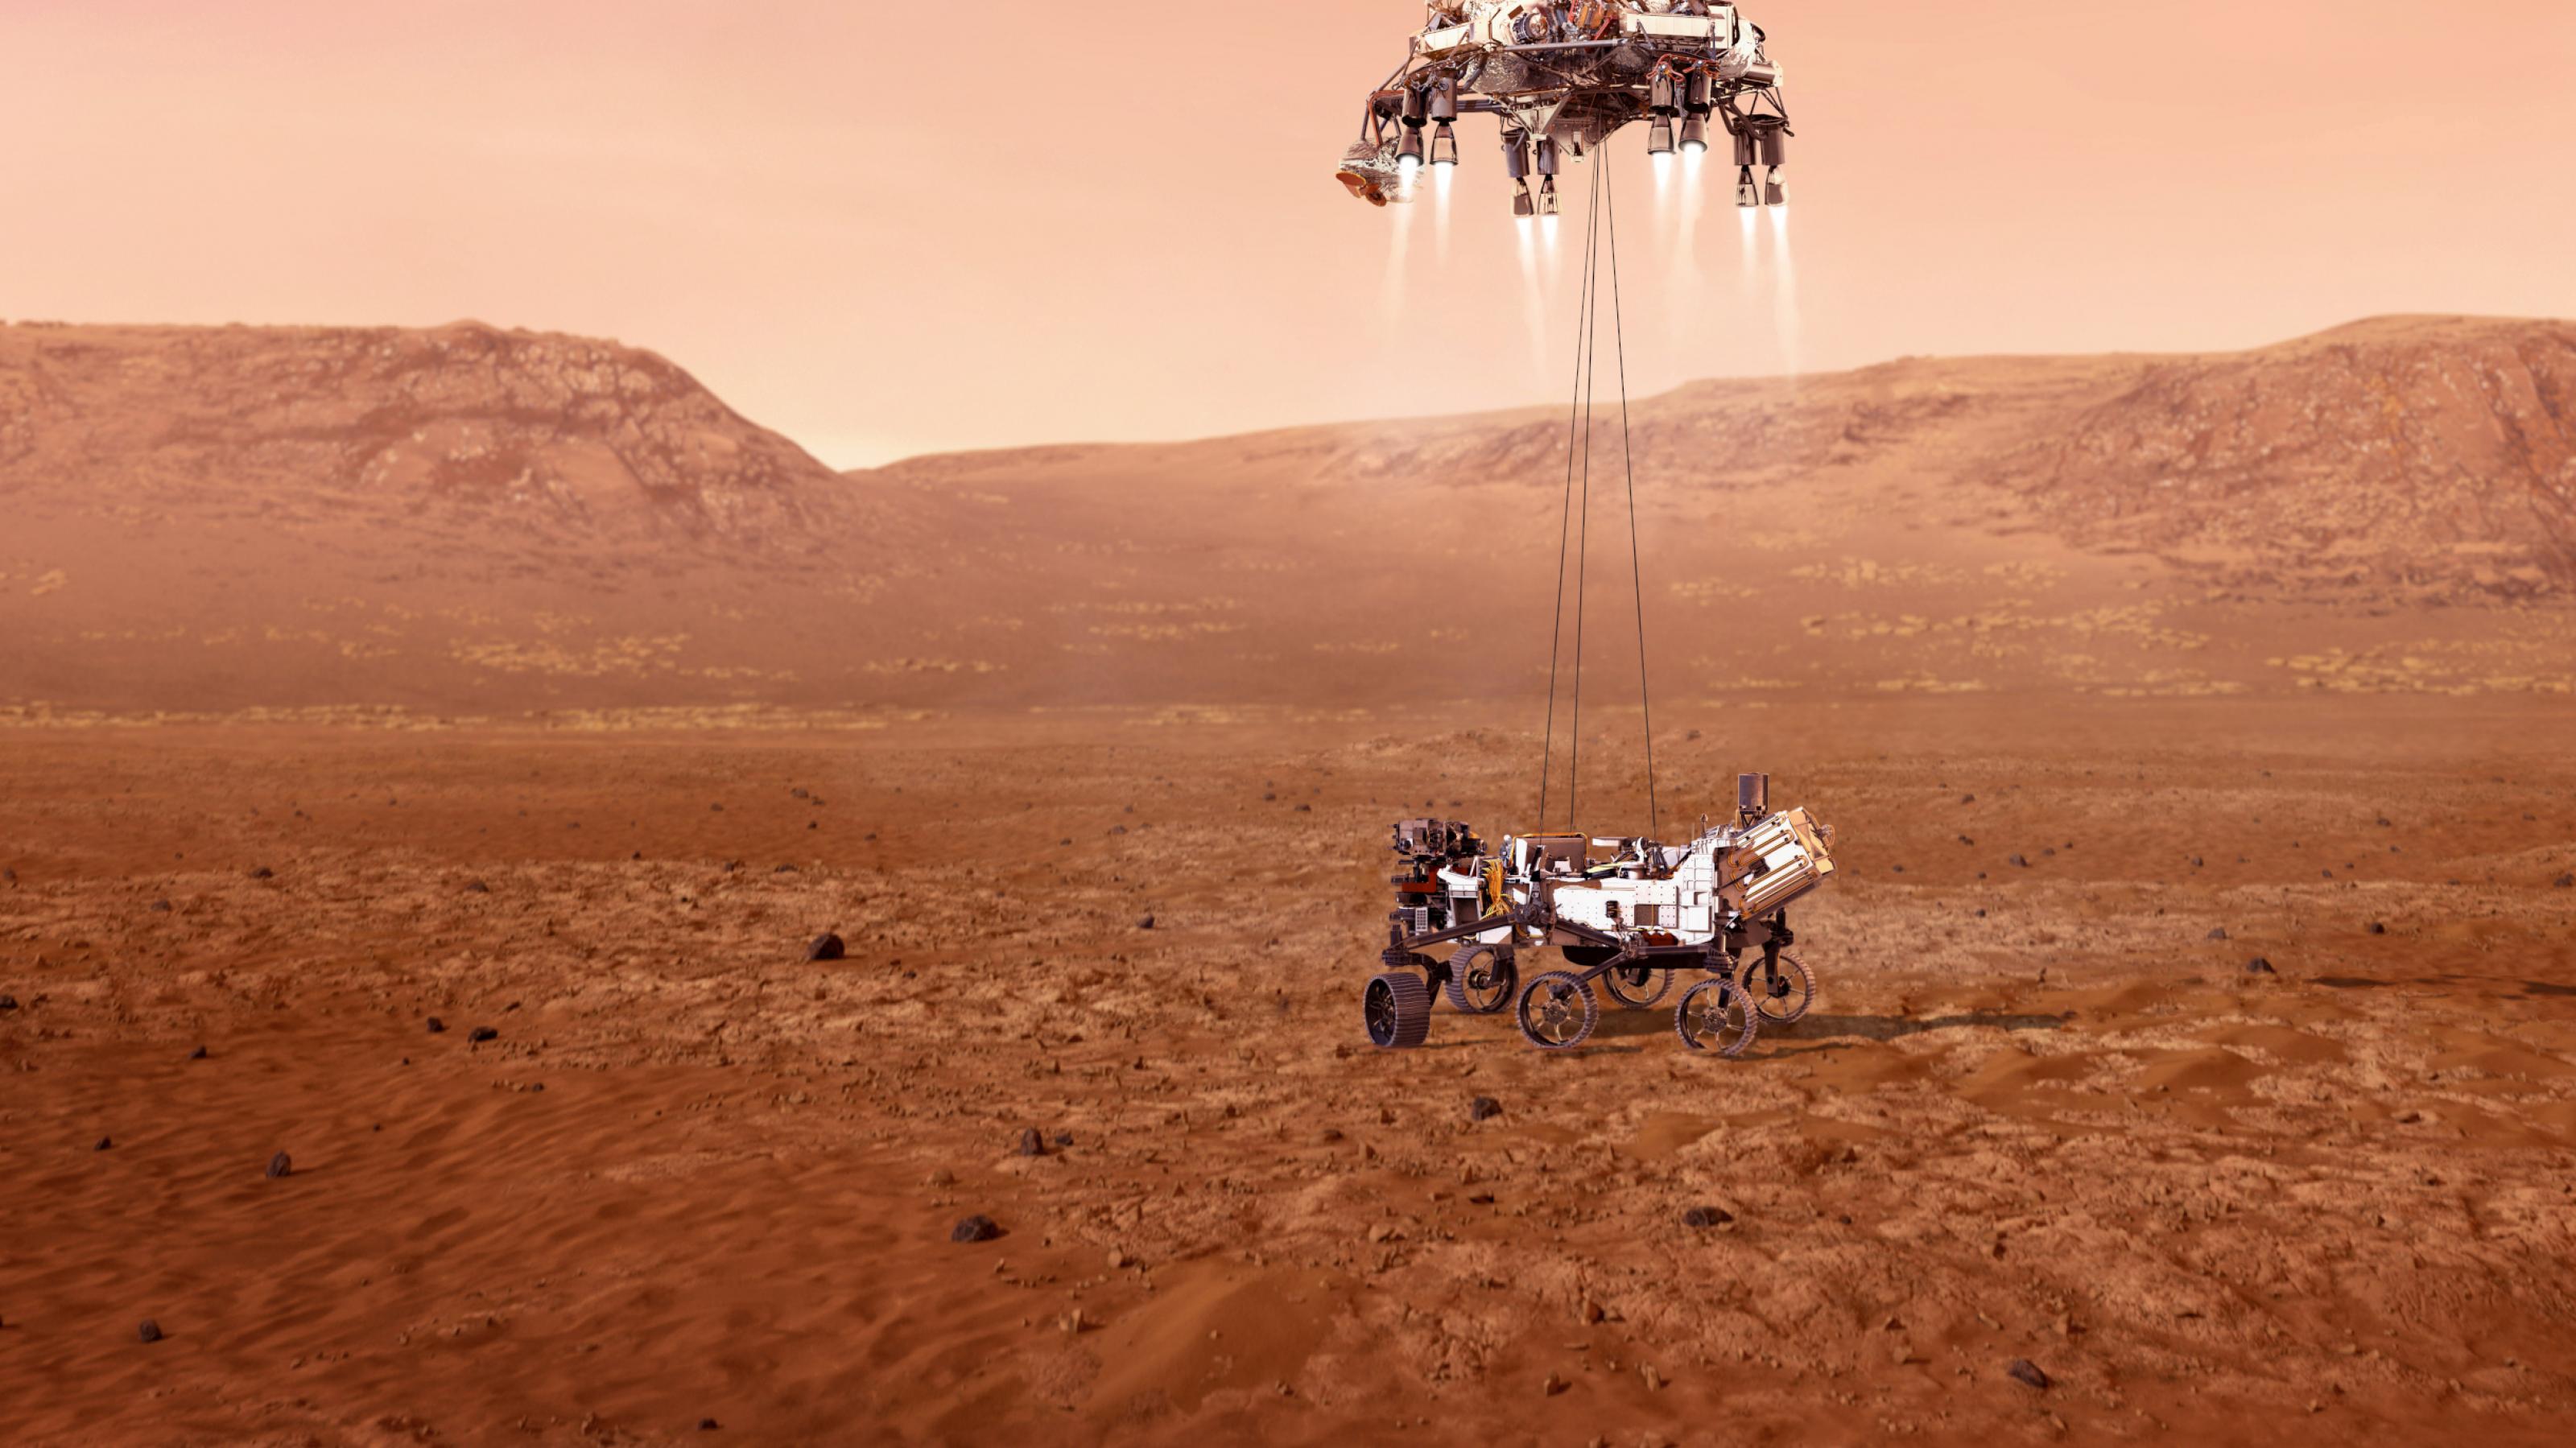 Computergrafik, die den Skycrane mit seinen kleinen Bremsraketen zeigt, der gerade den Rover Perseverance in den roten Marsstaub setzt.